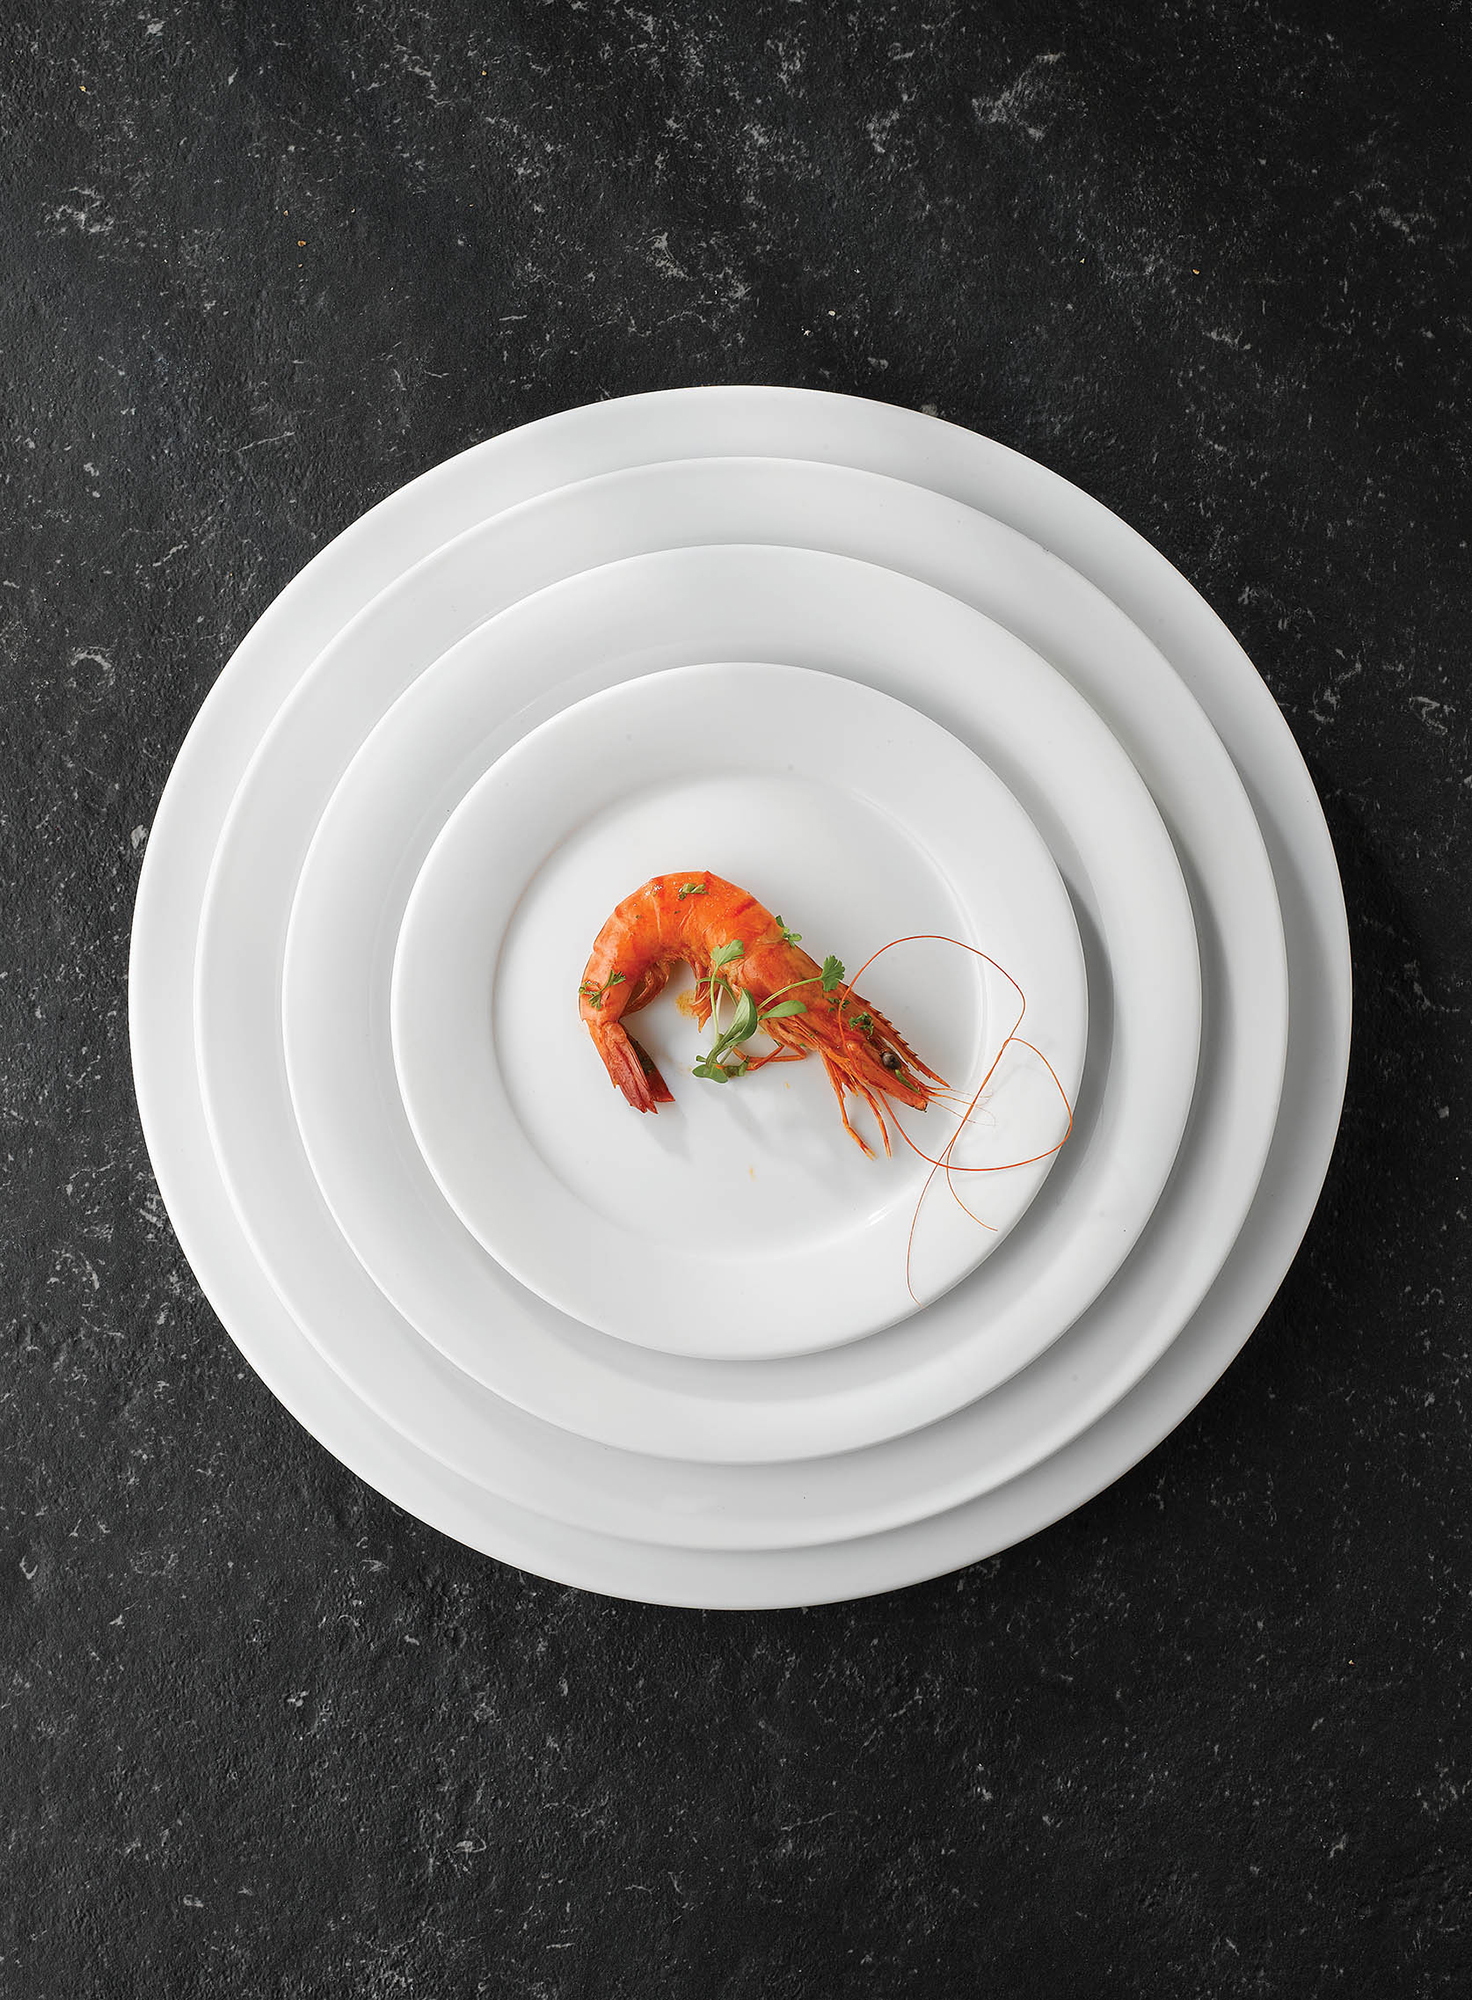 Churchill Art De Cuisine Menu Porcelain Platte Rechteckig 30,5X20Cm, 6 Stück, Weiß